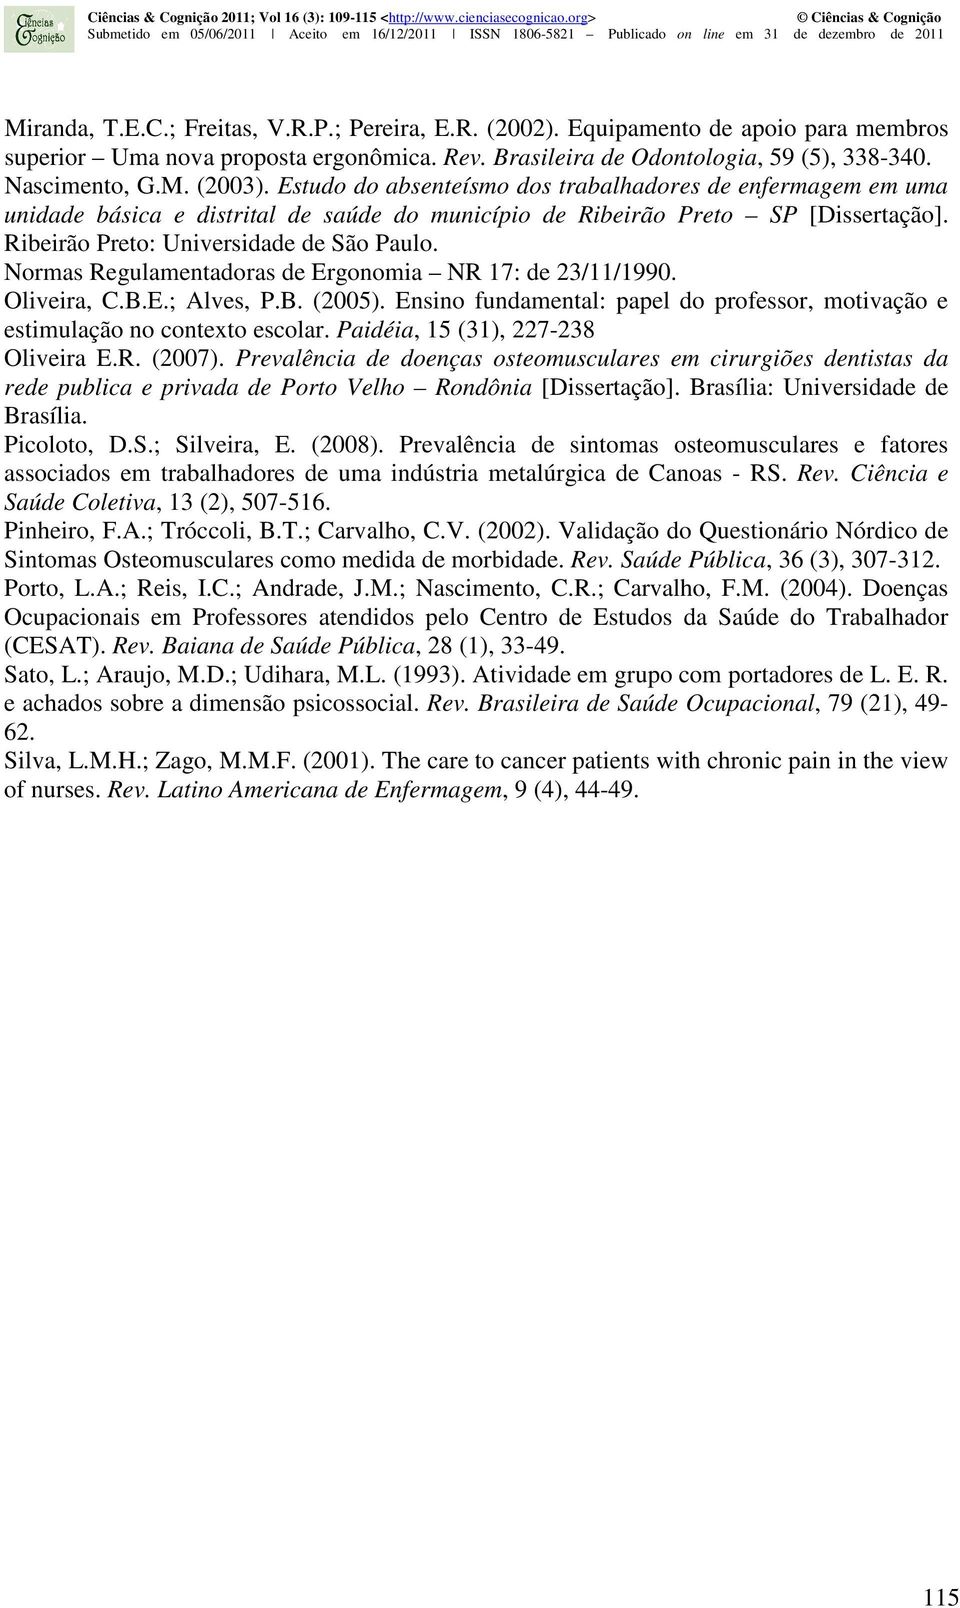 Normas Regulamentadoras de Ergonomia NR 17: de 23/11/1990. Oliveira, C.B.E.; Alves, P.B. (2005). Ensino fundamental: papel do professor, motivação e estimulação no contexto escolar.